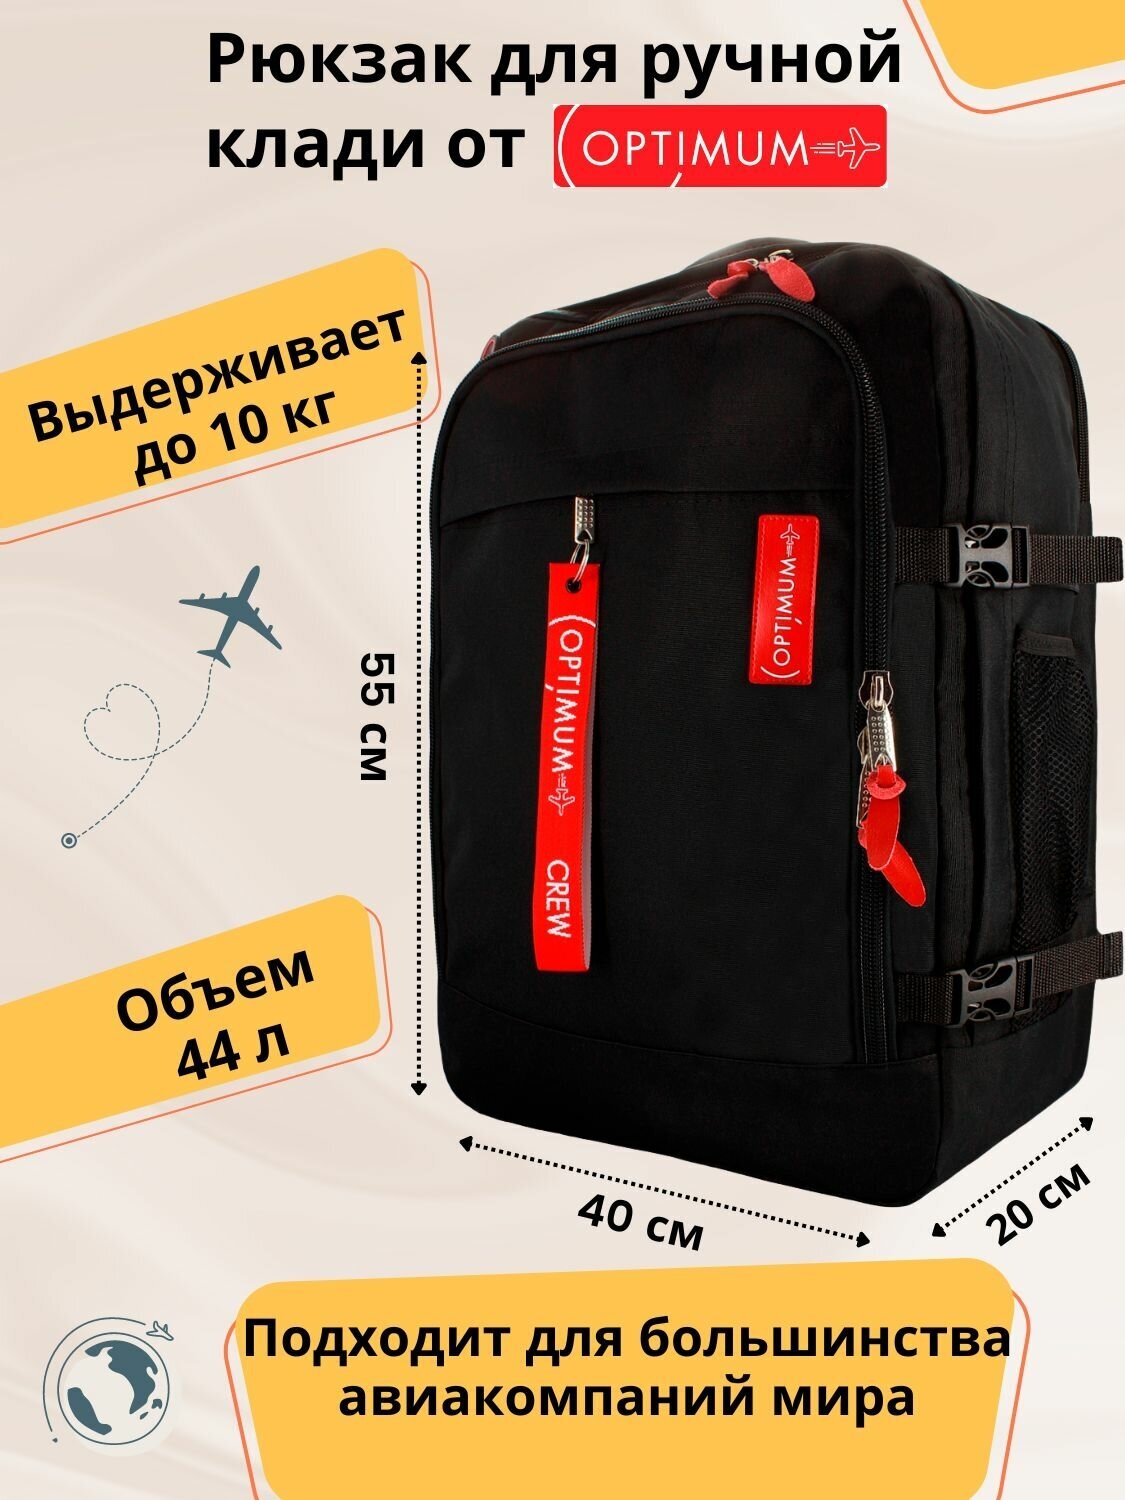 Рюкзак для путешествий дорожный ручная кладь 55х40х20 в самолет 44 л, черный